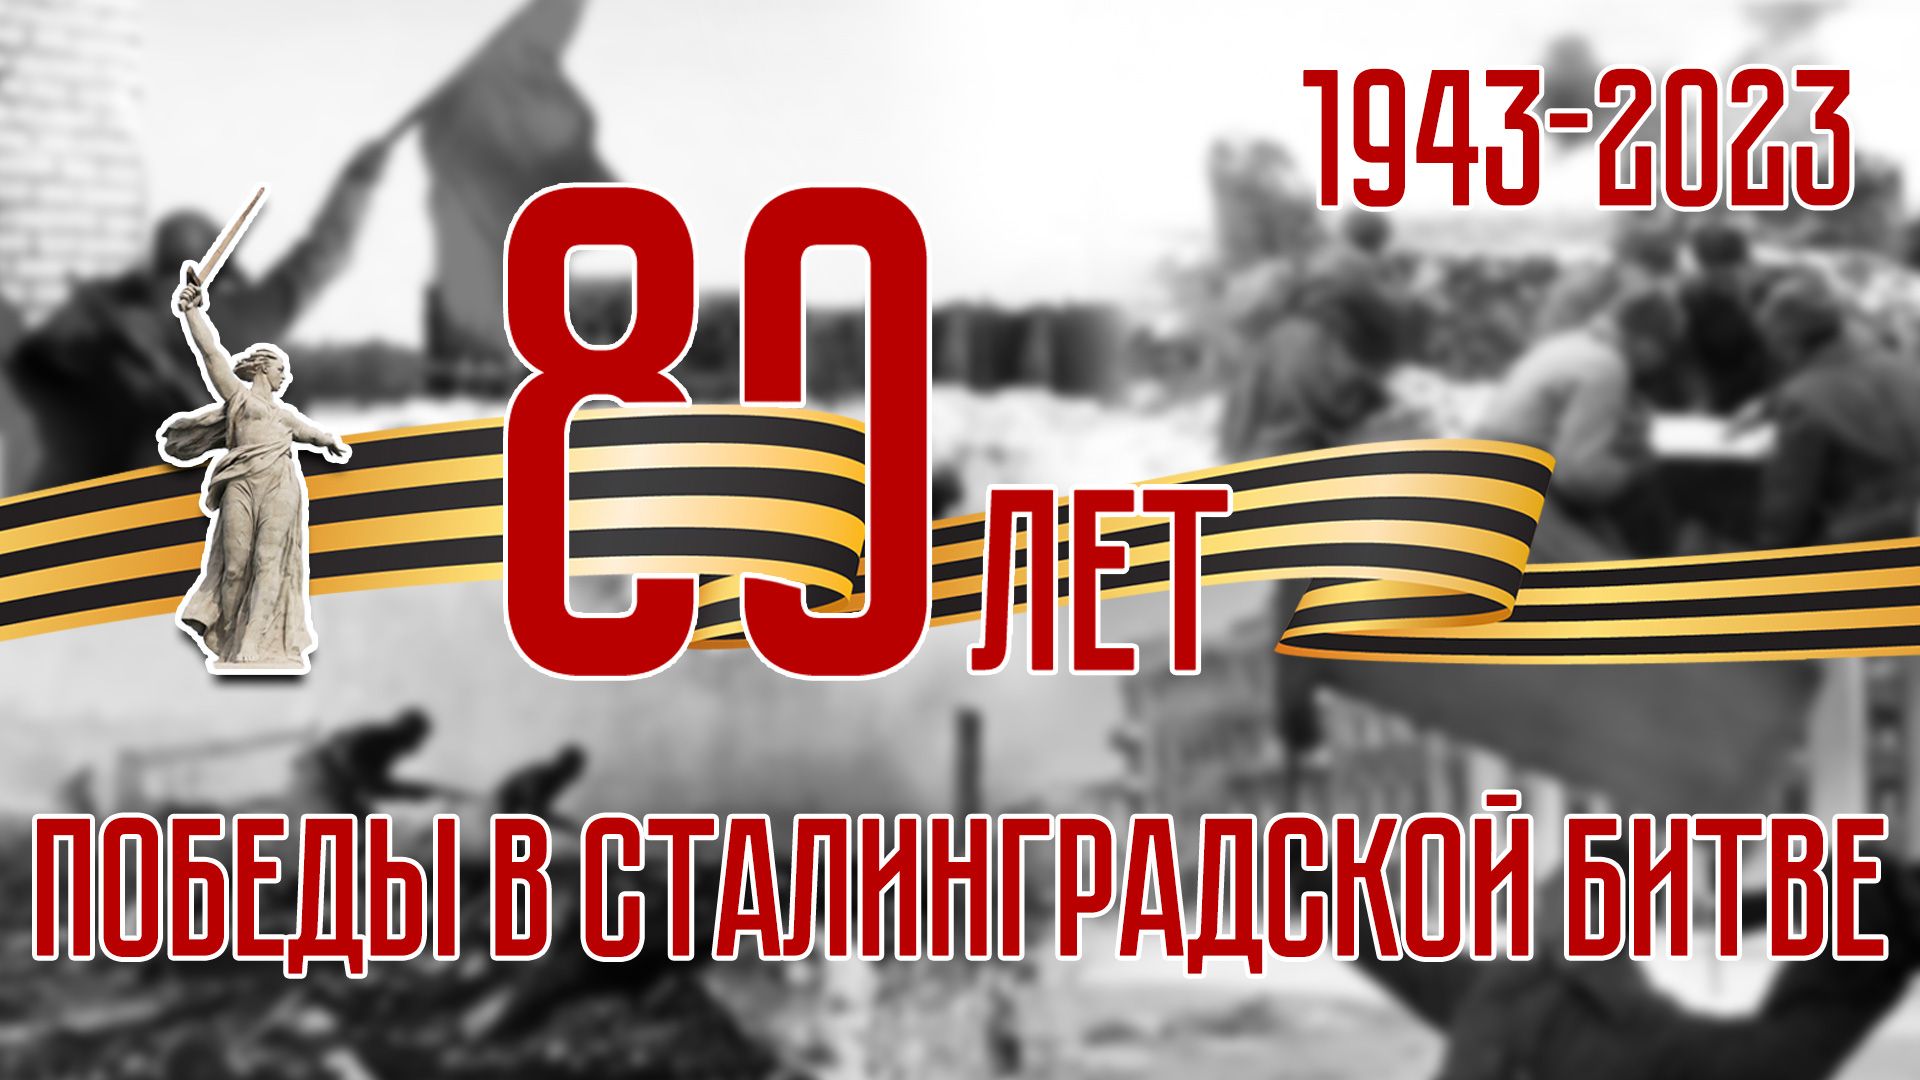 80 лет победы в Сталинградской битве!